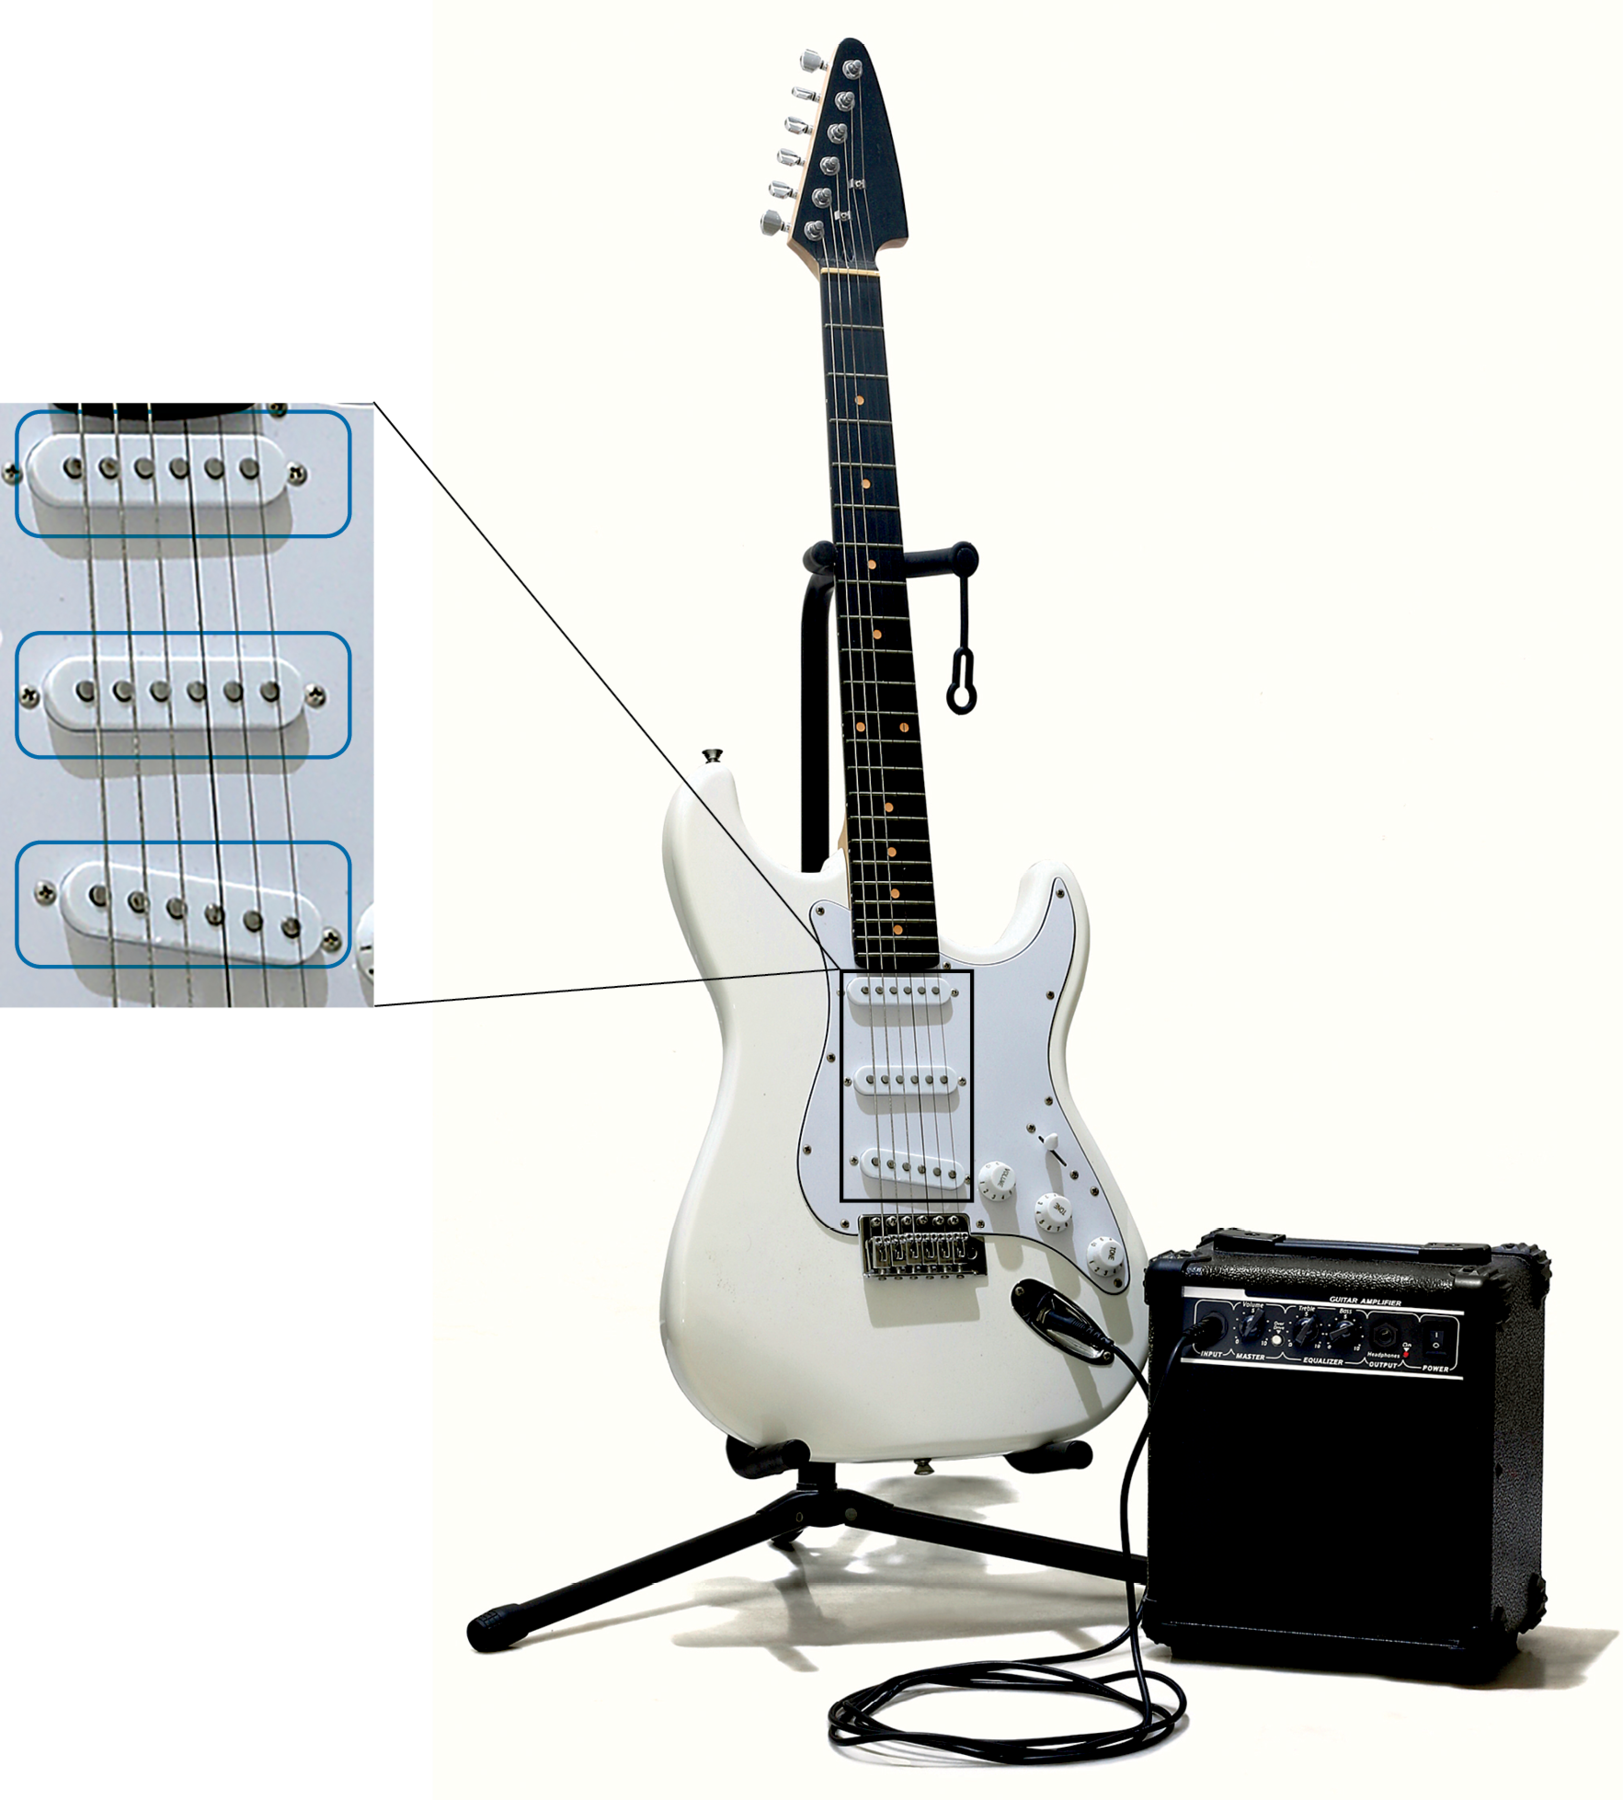 Fotografia. Guitarra branca em um suporte, ligada a um amplificador. À esquerda, uma parte da guitarra é destacada em zoom para mostrar os detalhes dos três captadores de sons, que apresentam seis pontos cada.